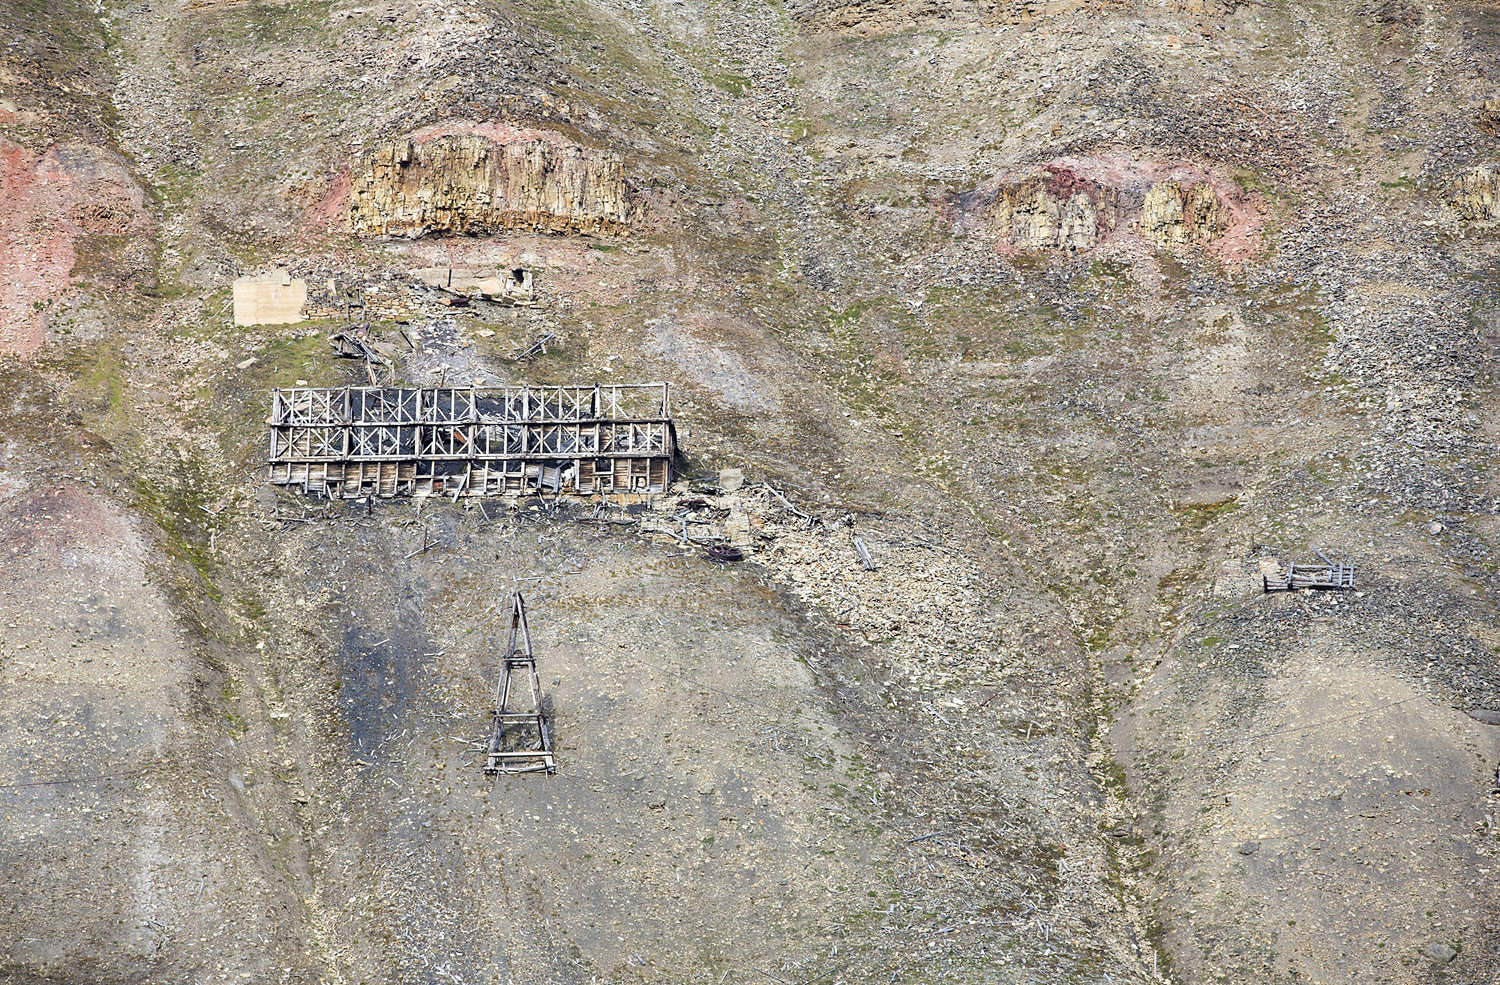 An abandoned coal mine in Longyearbyen